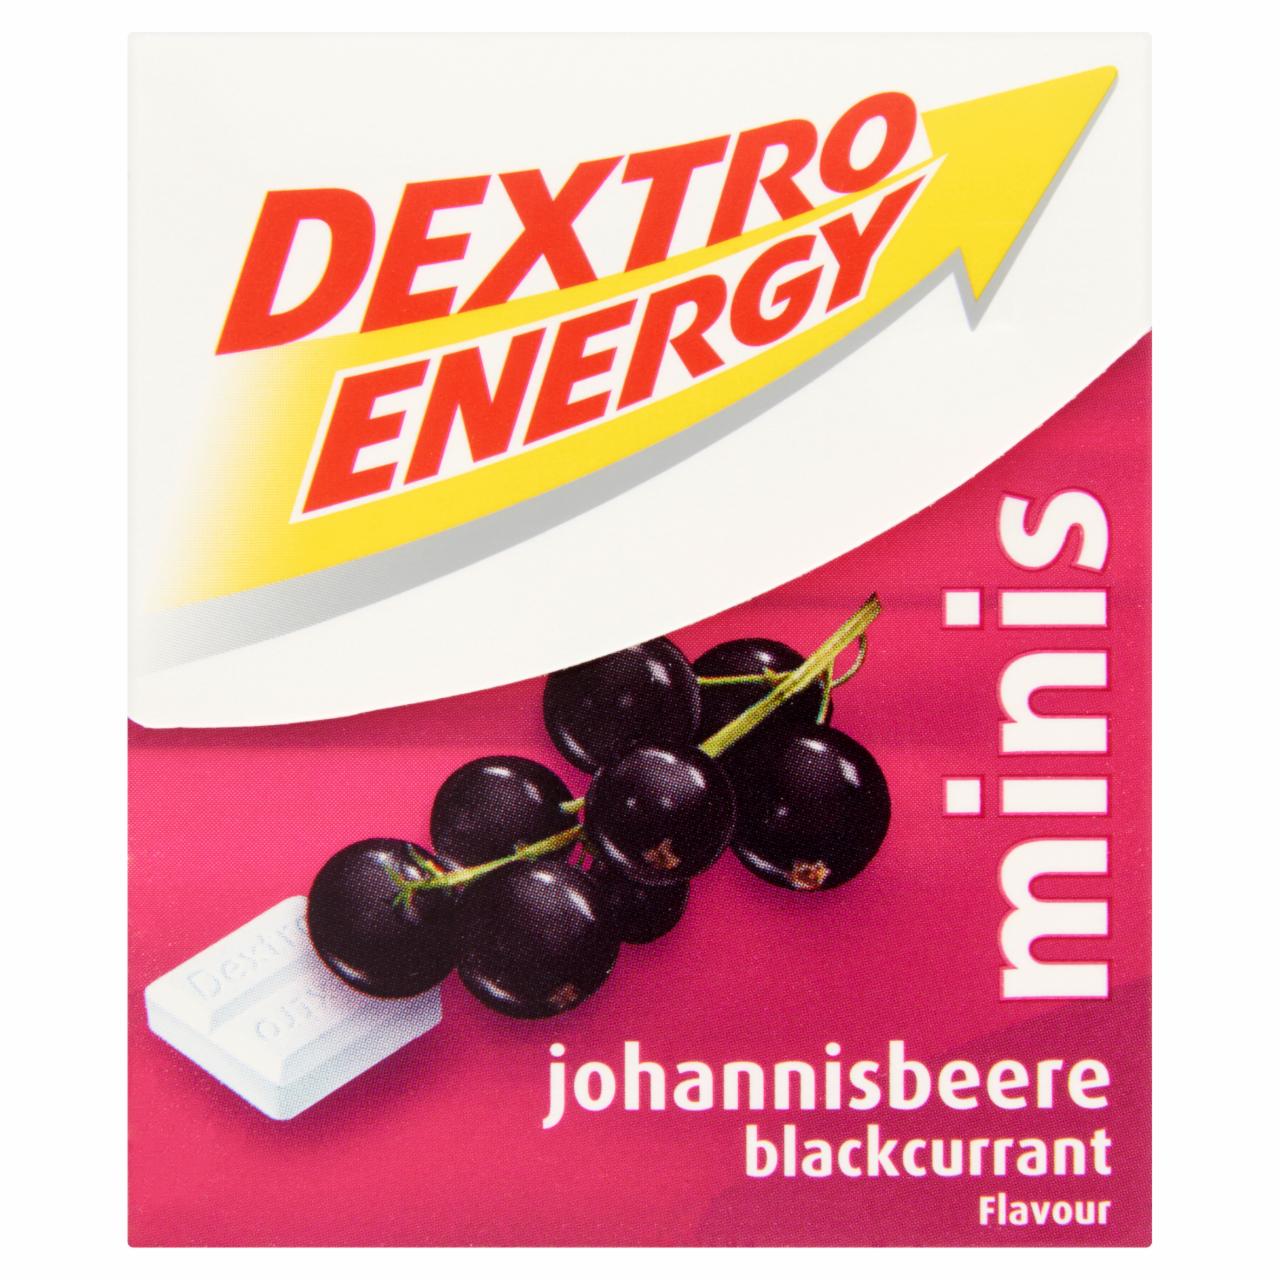 Képek - Dextro Energy energetizáló feketeribizli ízű szőlőcukor tabletta 50 g